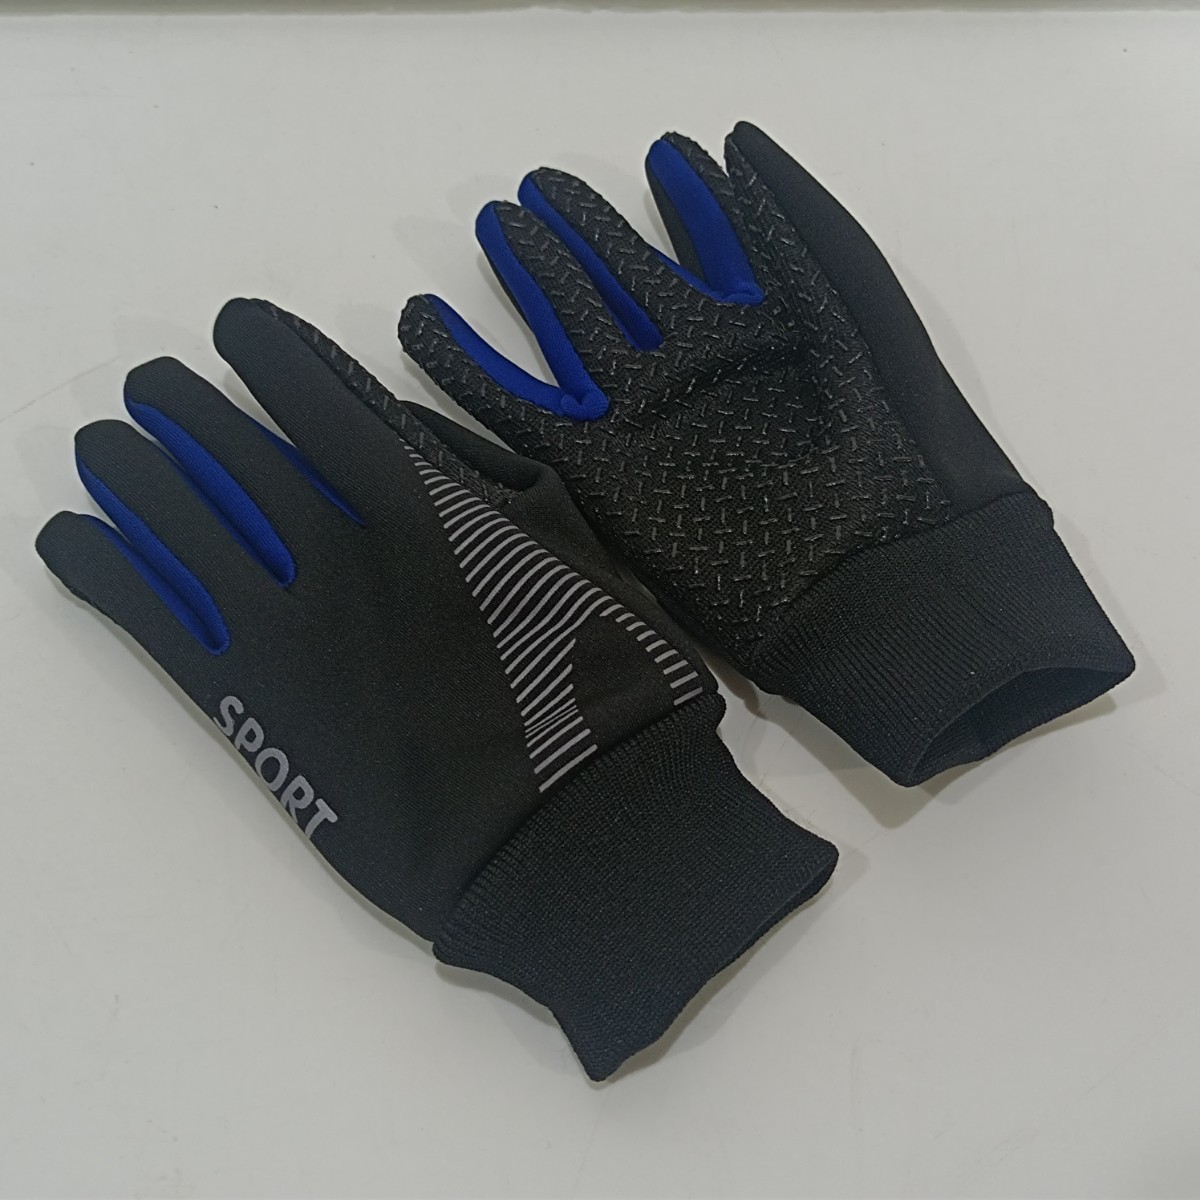 【... нет  】 защита от холода   перчатки ... мешок   ребенок  для   голубой M размер   y1101-1